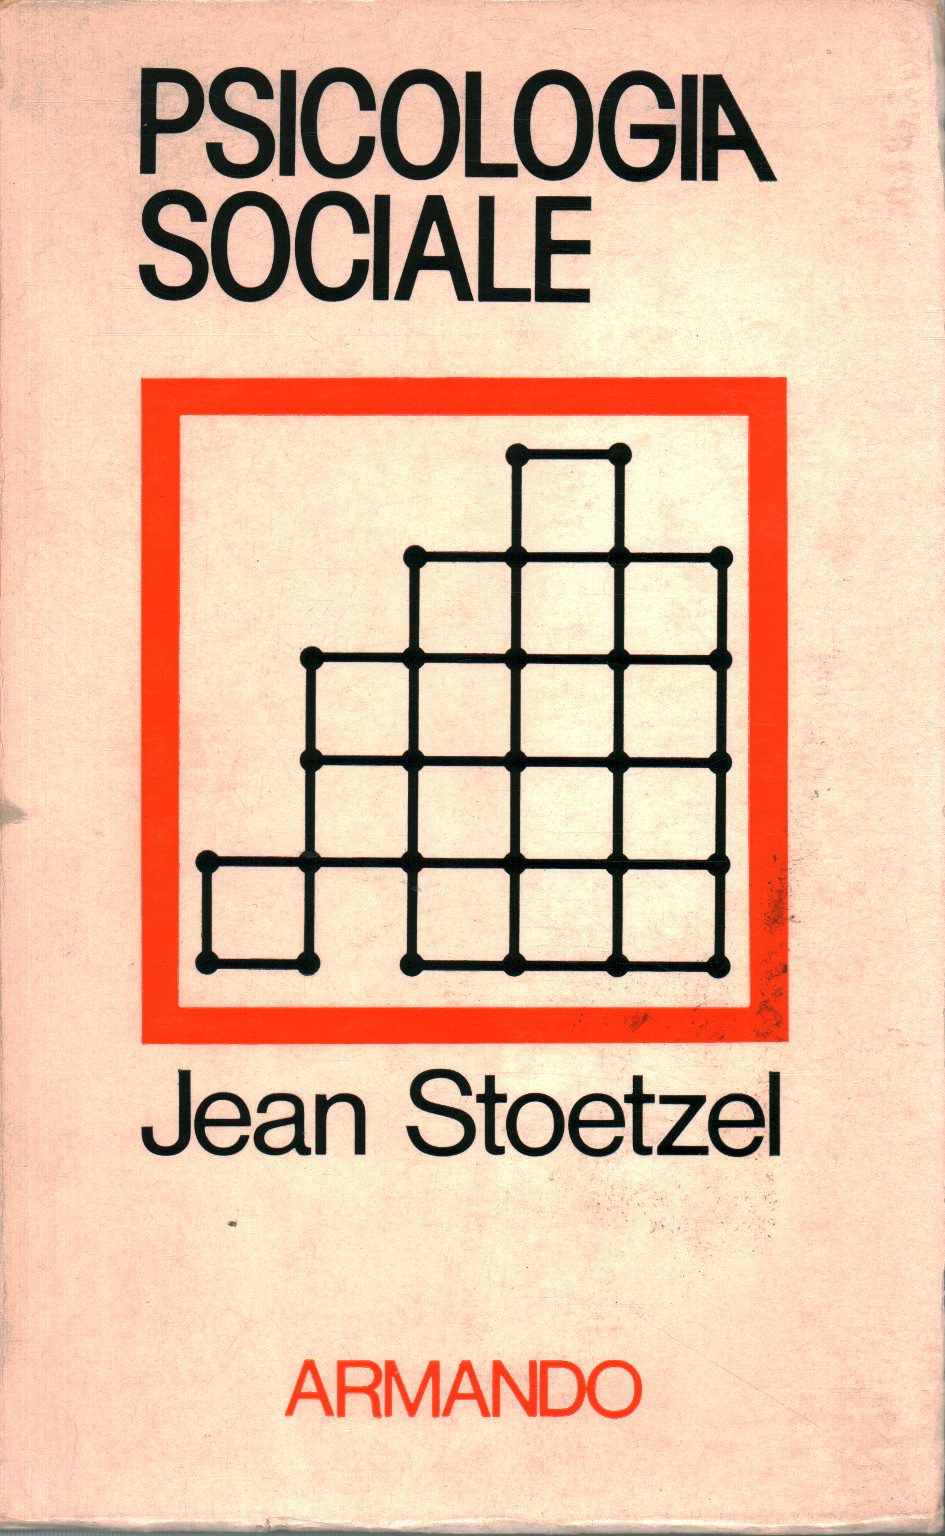 Psicología social, Jean Stoetzel